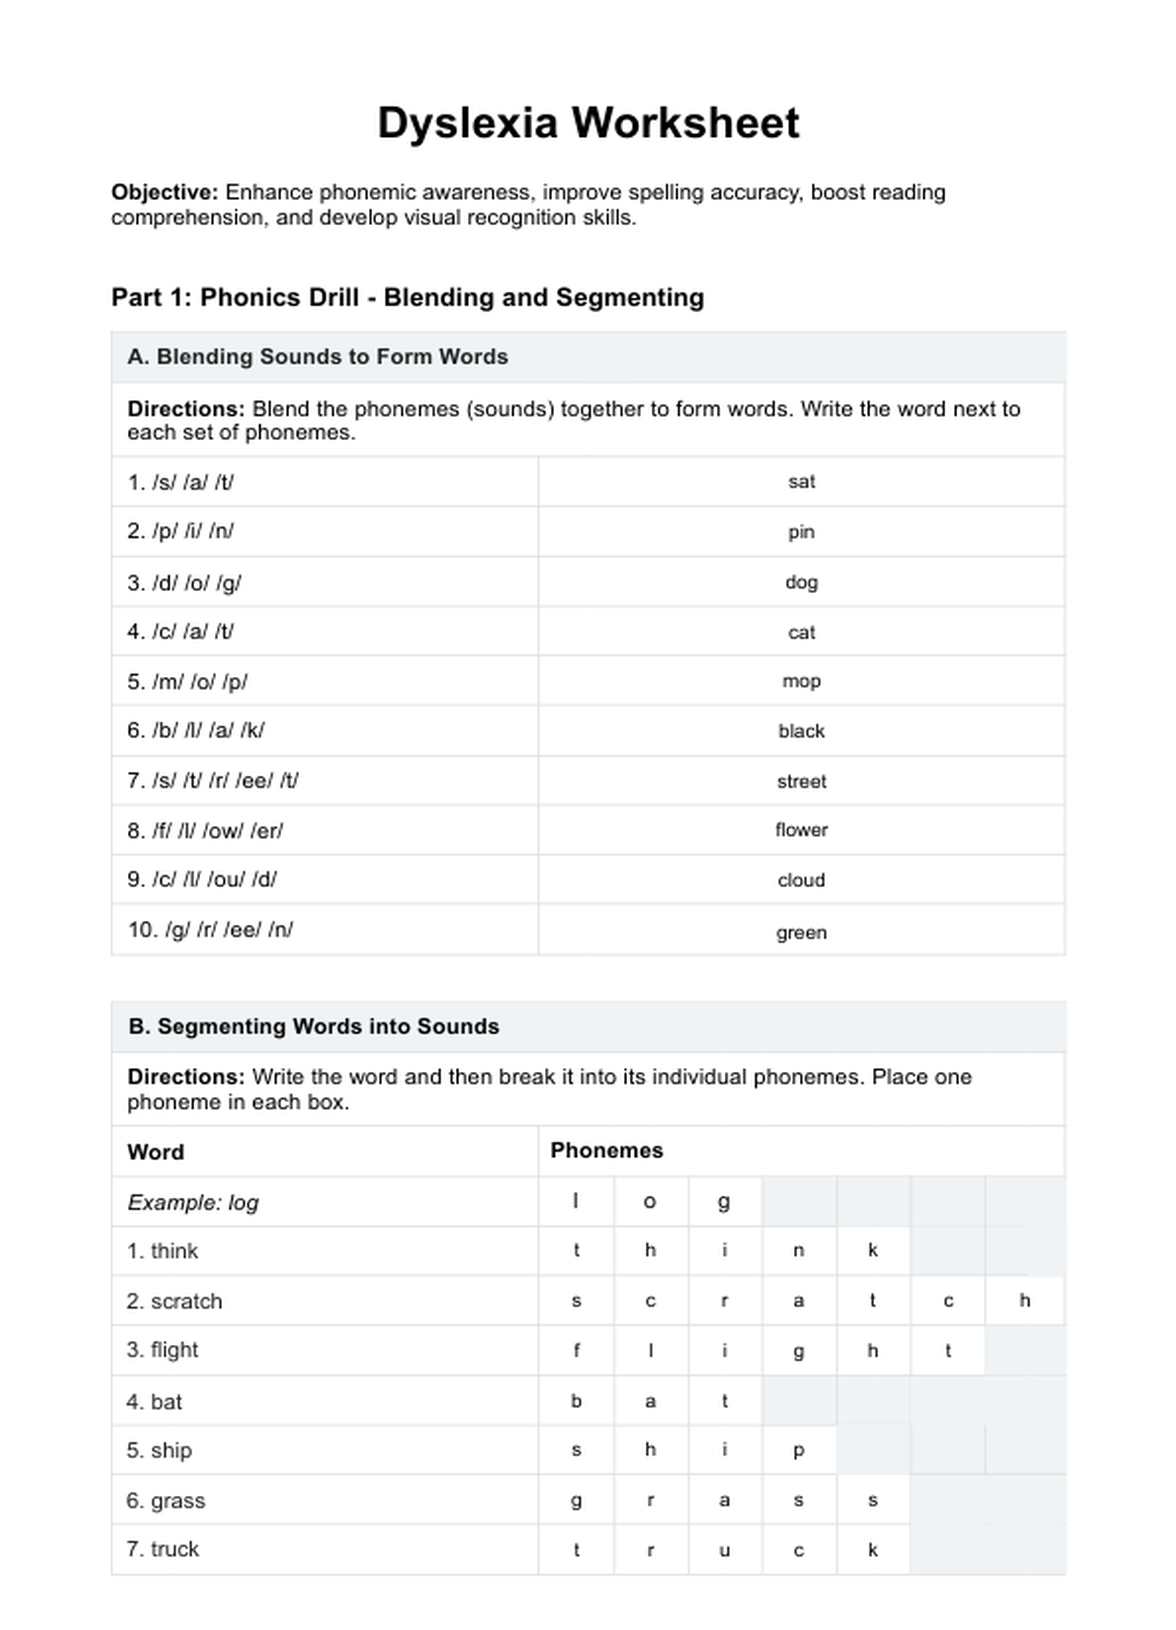 Dyslexia Worksheets PDF Example